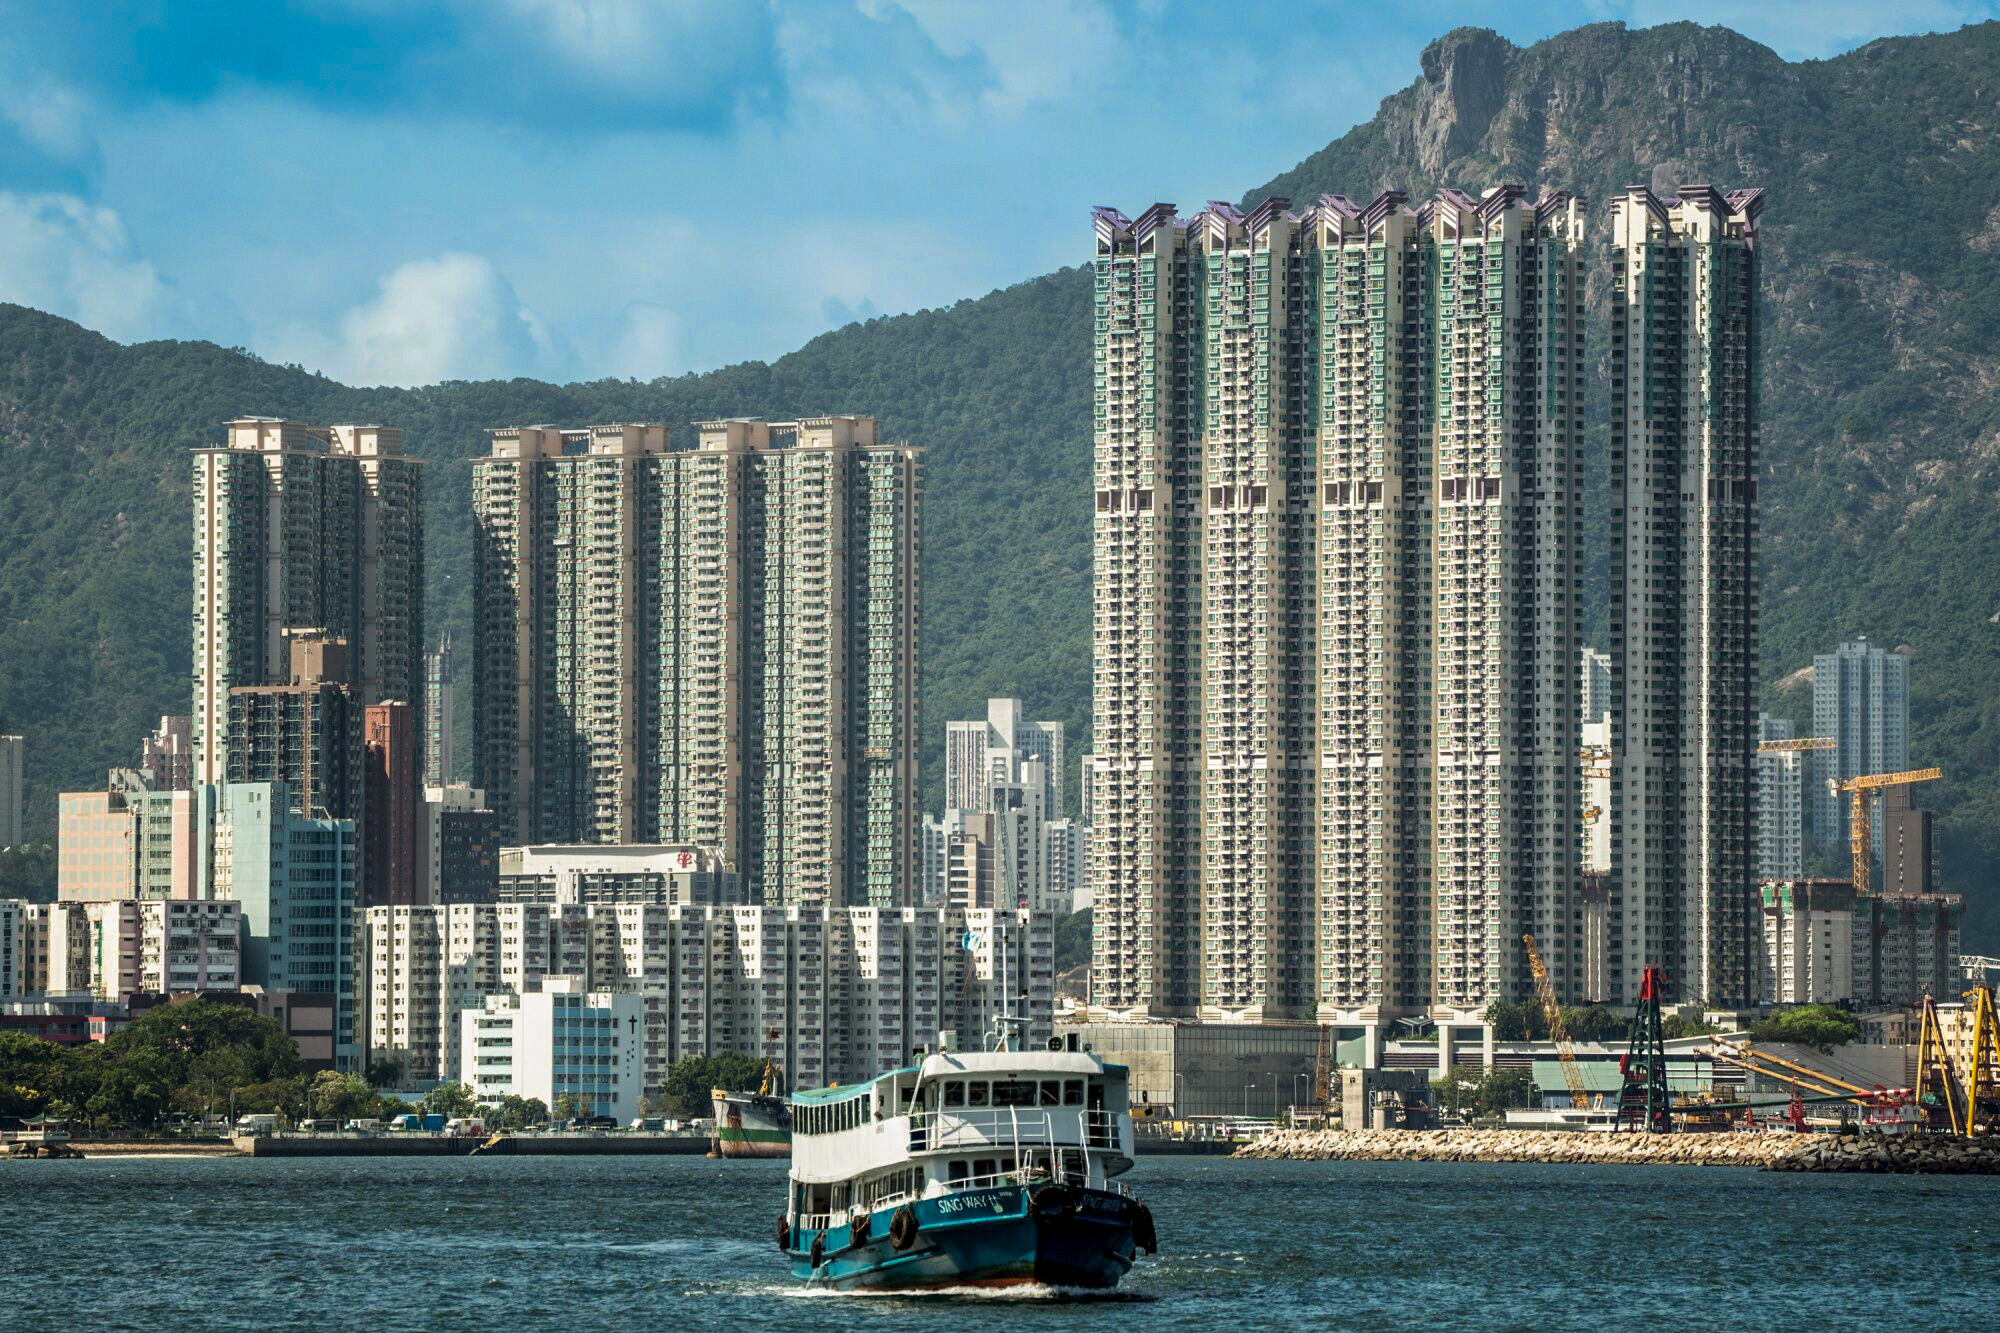 Residential buildings in Hong Kong. Photo: Bloomberg